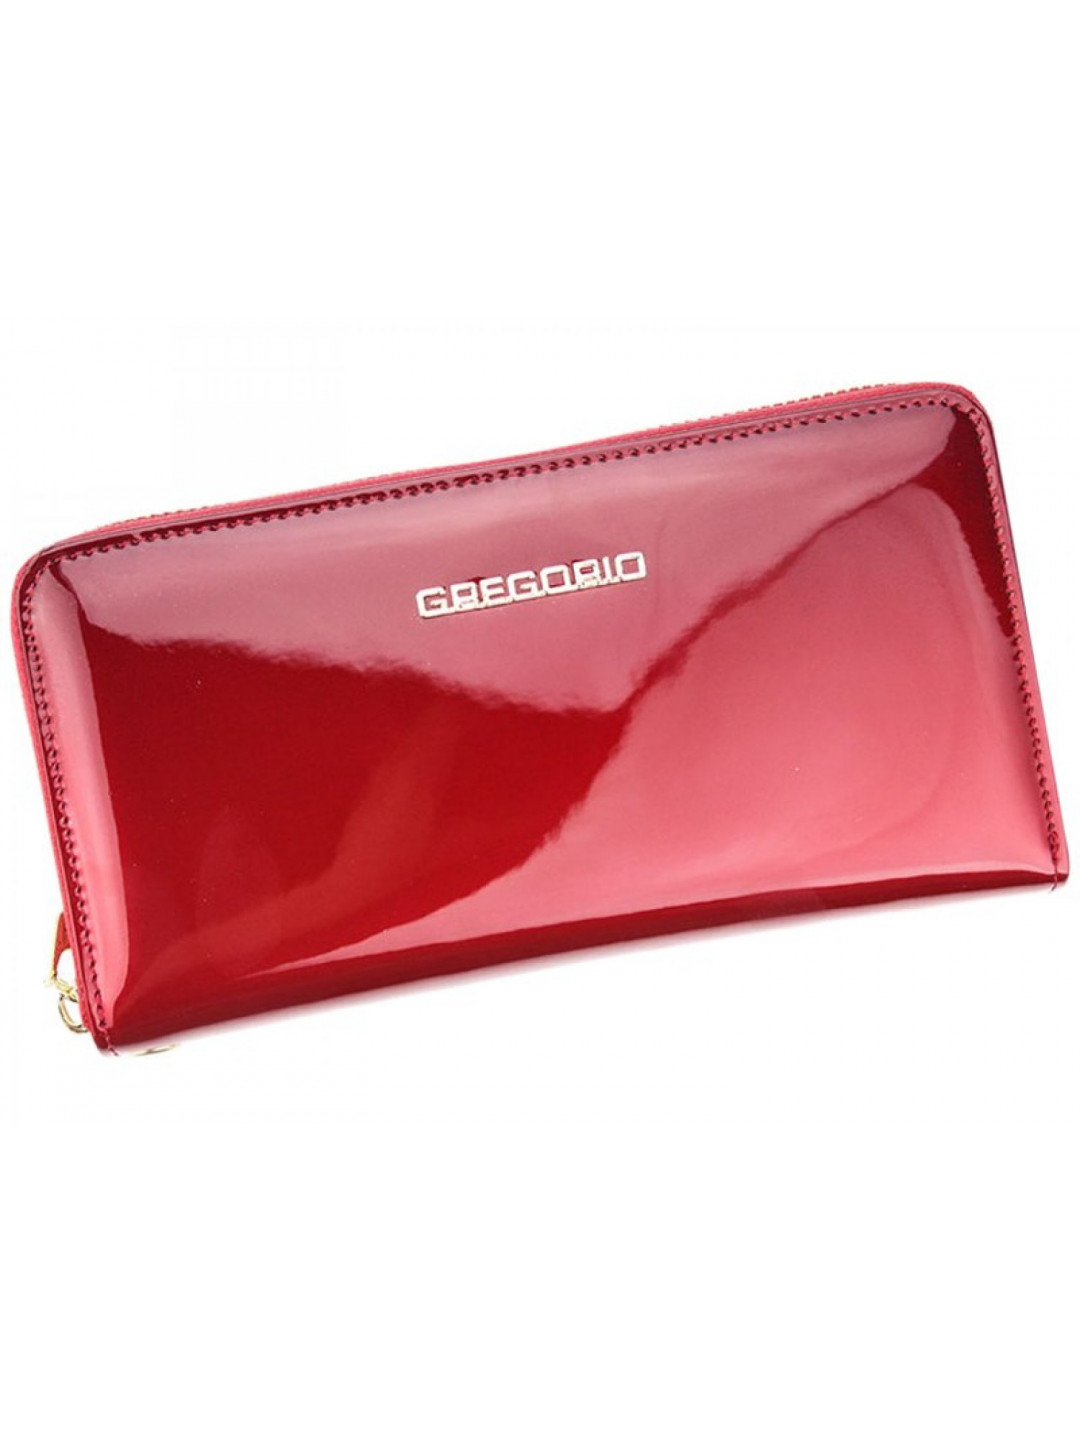 Dámská kožená pouzdrová peněženka červená – Gregorio Clorinna